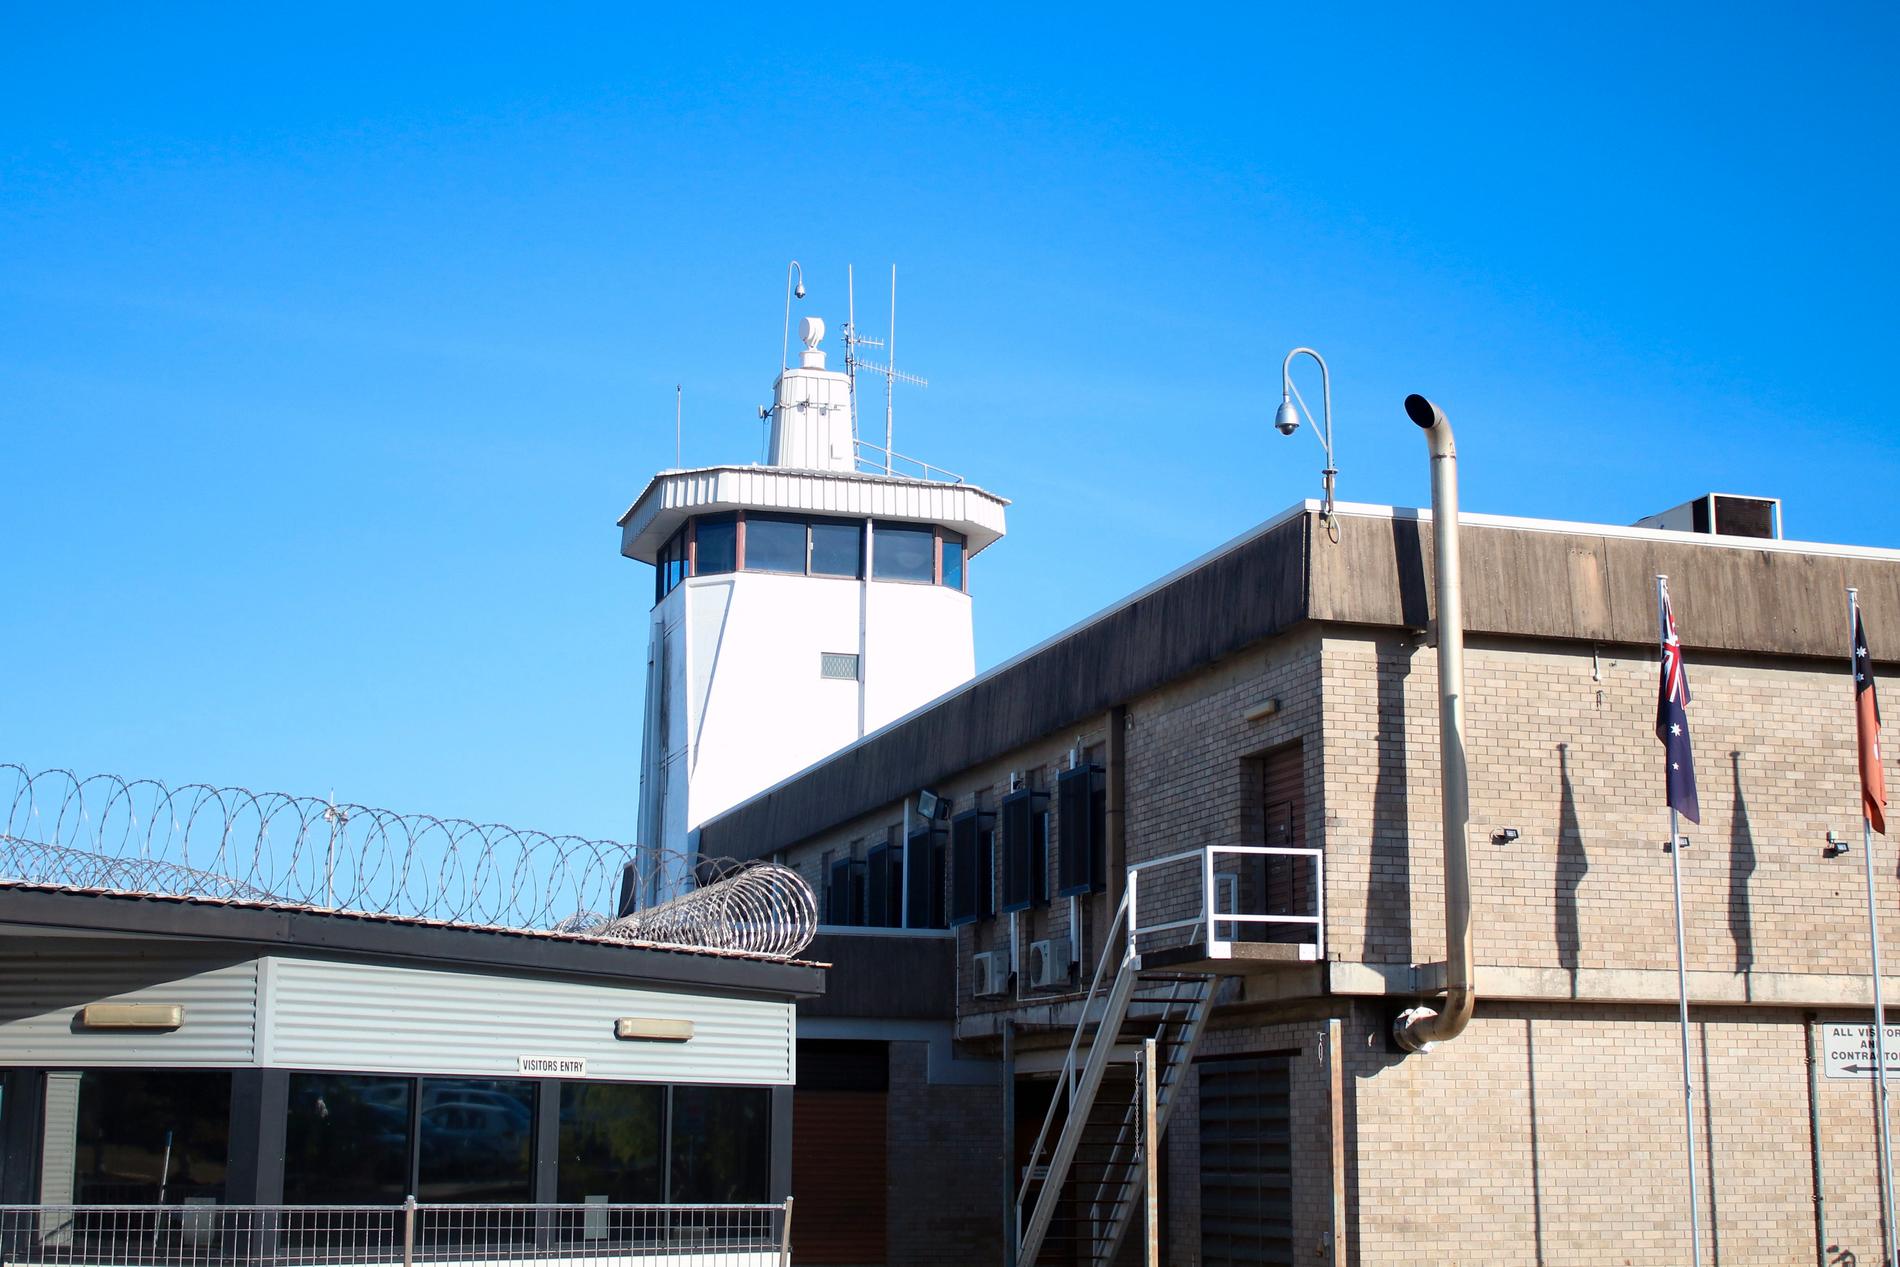 Intagna på ungdomsanstalten Don Dale Correction Center i Darwin i norra Australien spejades med tårgas medan de fortfarande var inlåsta i sina celler, avslöjar tv-programmet ”Four Corners”.